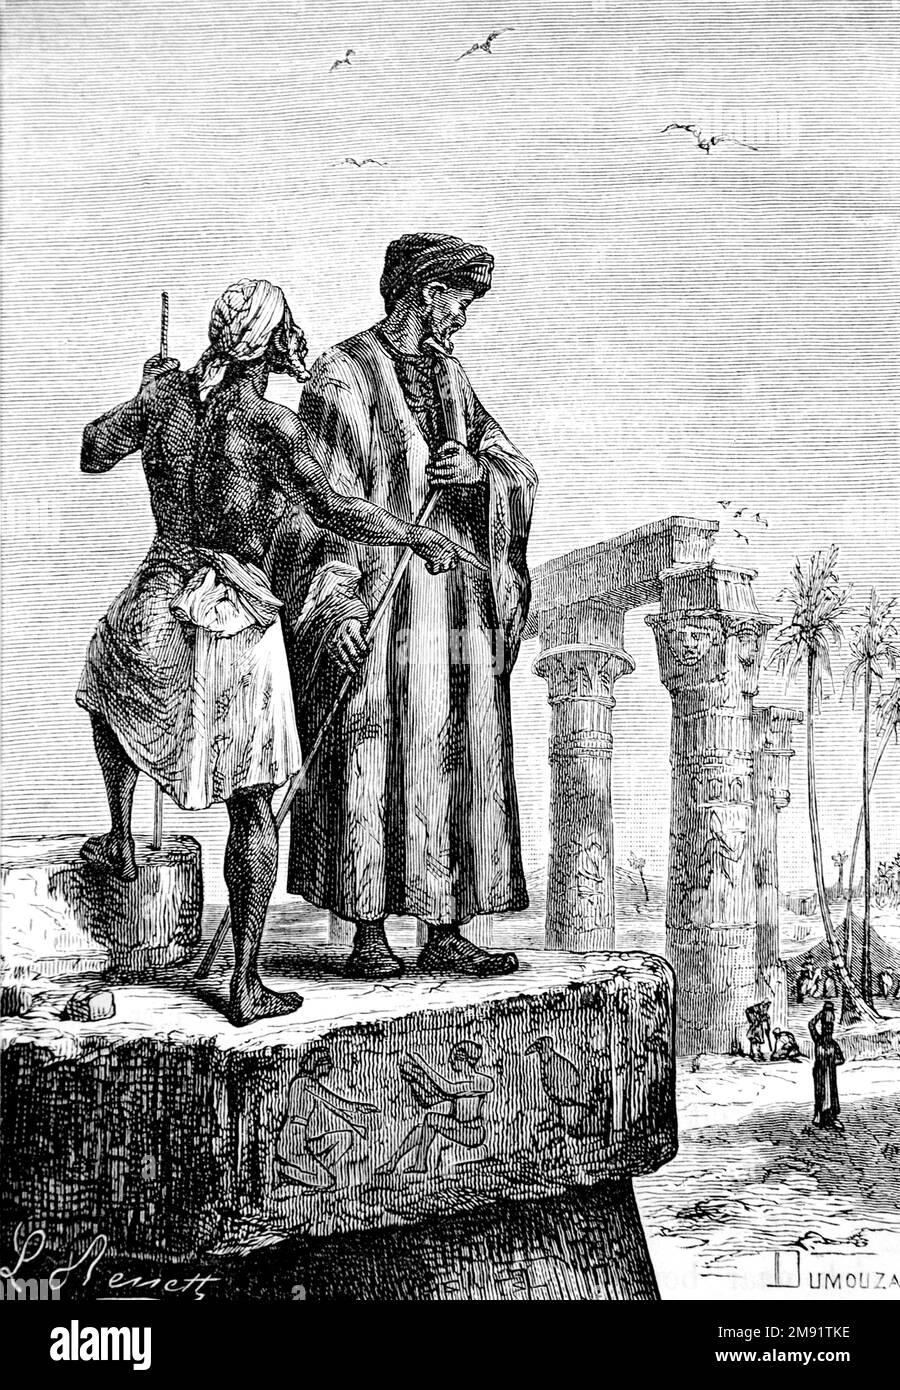 Ibn Battuta (rechts). Illustration des Berber Maghrebi-Gelehrten und Entdeckers Abu Abdullah Muhammad ibn Battutah (1304-1368/1369), graviert von Léon Benett aus einem Aufsatz von Jules Verne mit dem Titel "Découverte de la terre" ("Entdeckung der Erde"), 1878 Stockfoto